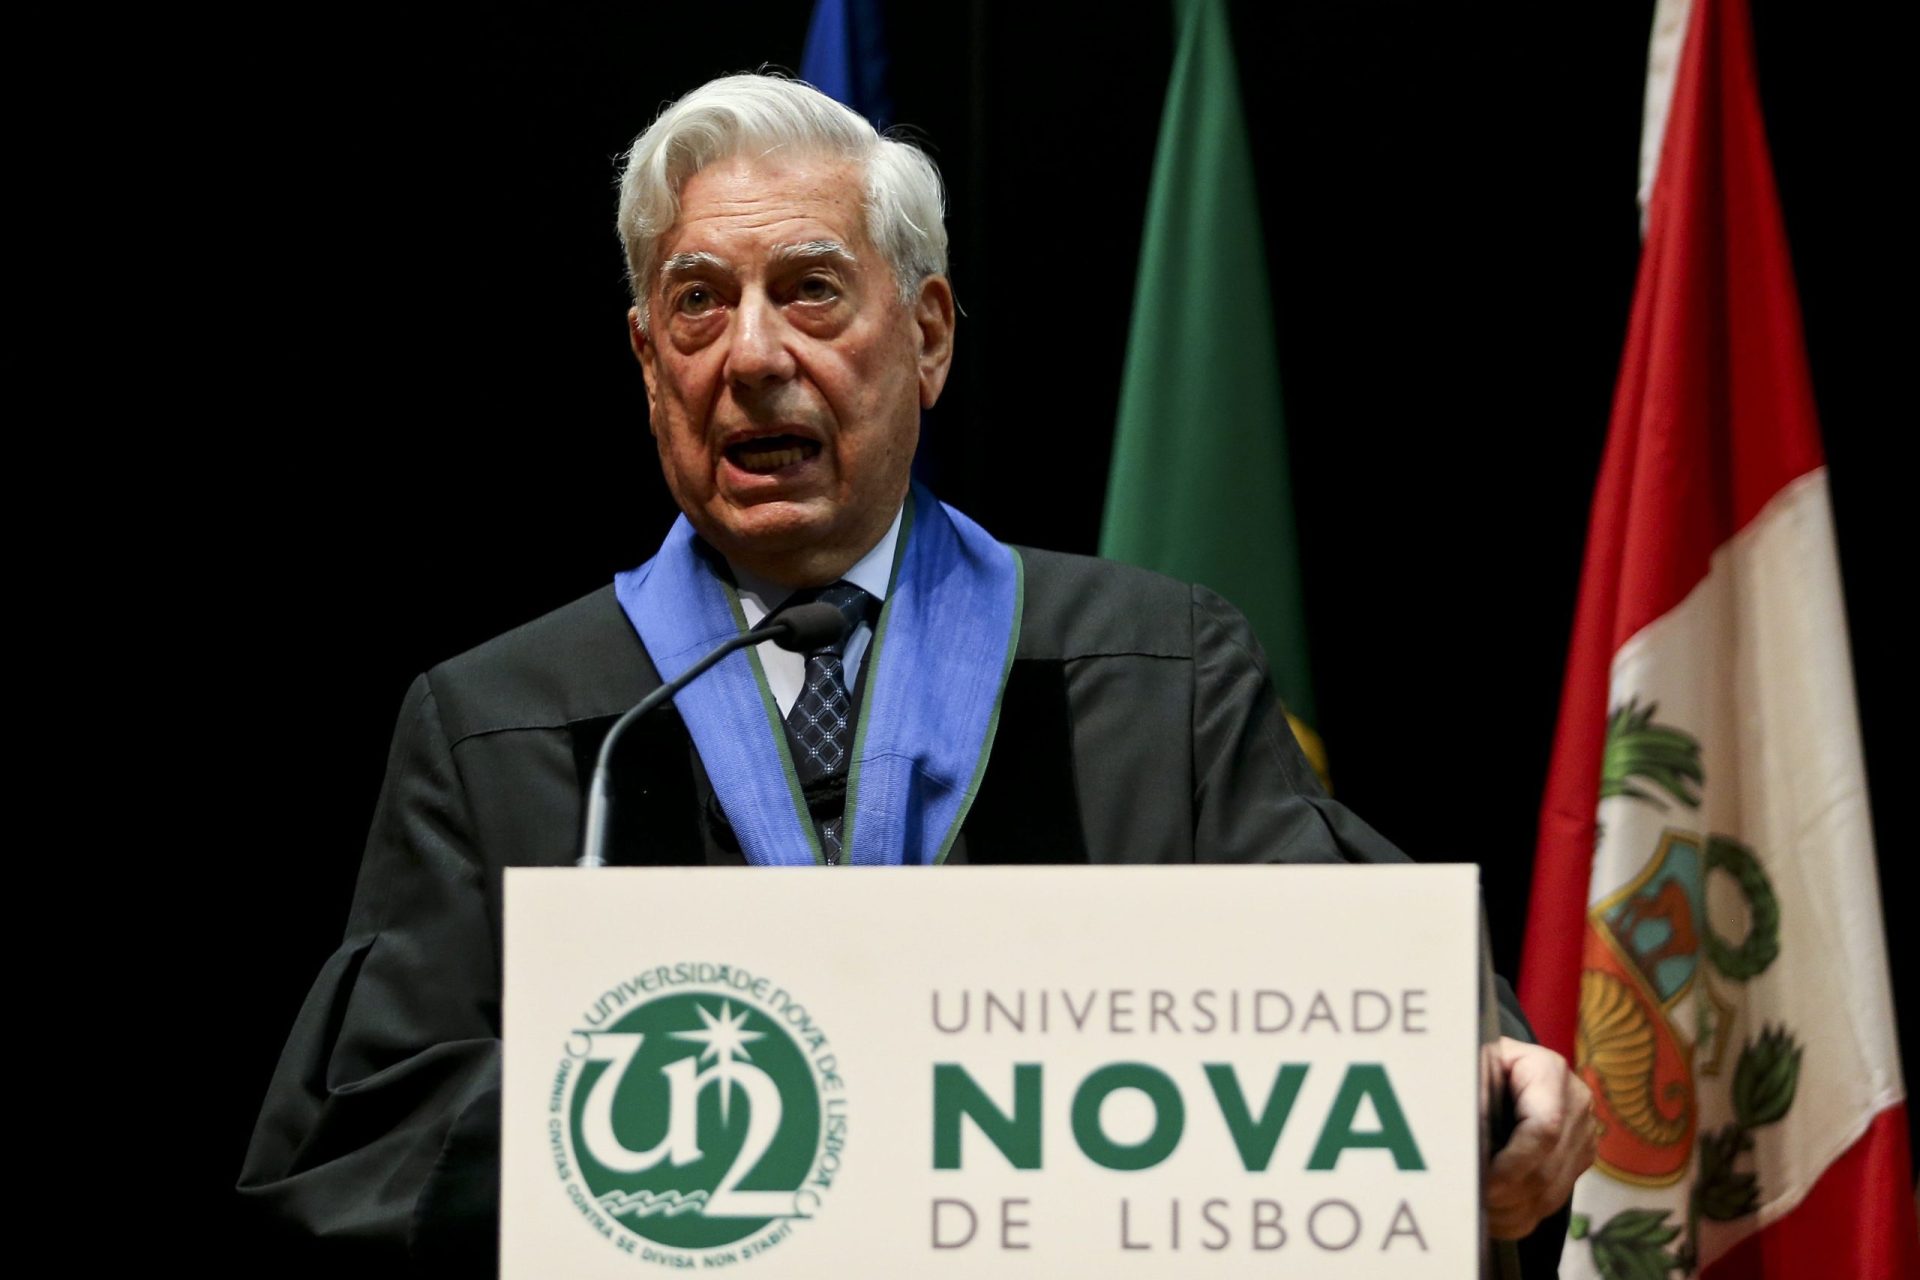 Vargas Llosa: “Nada nos ensina melhor que um livro”